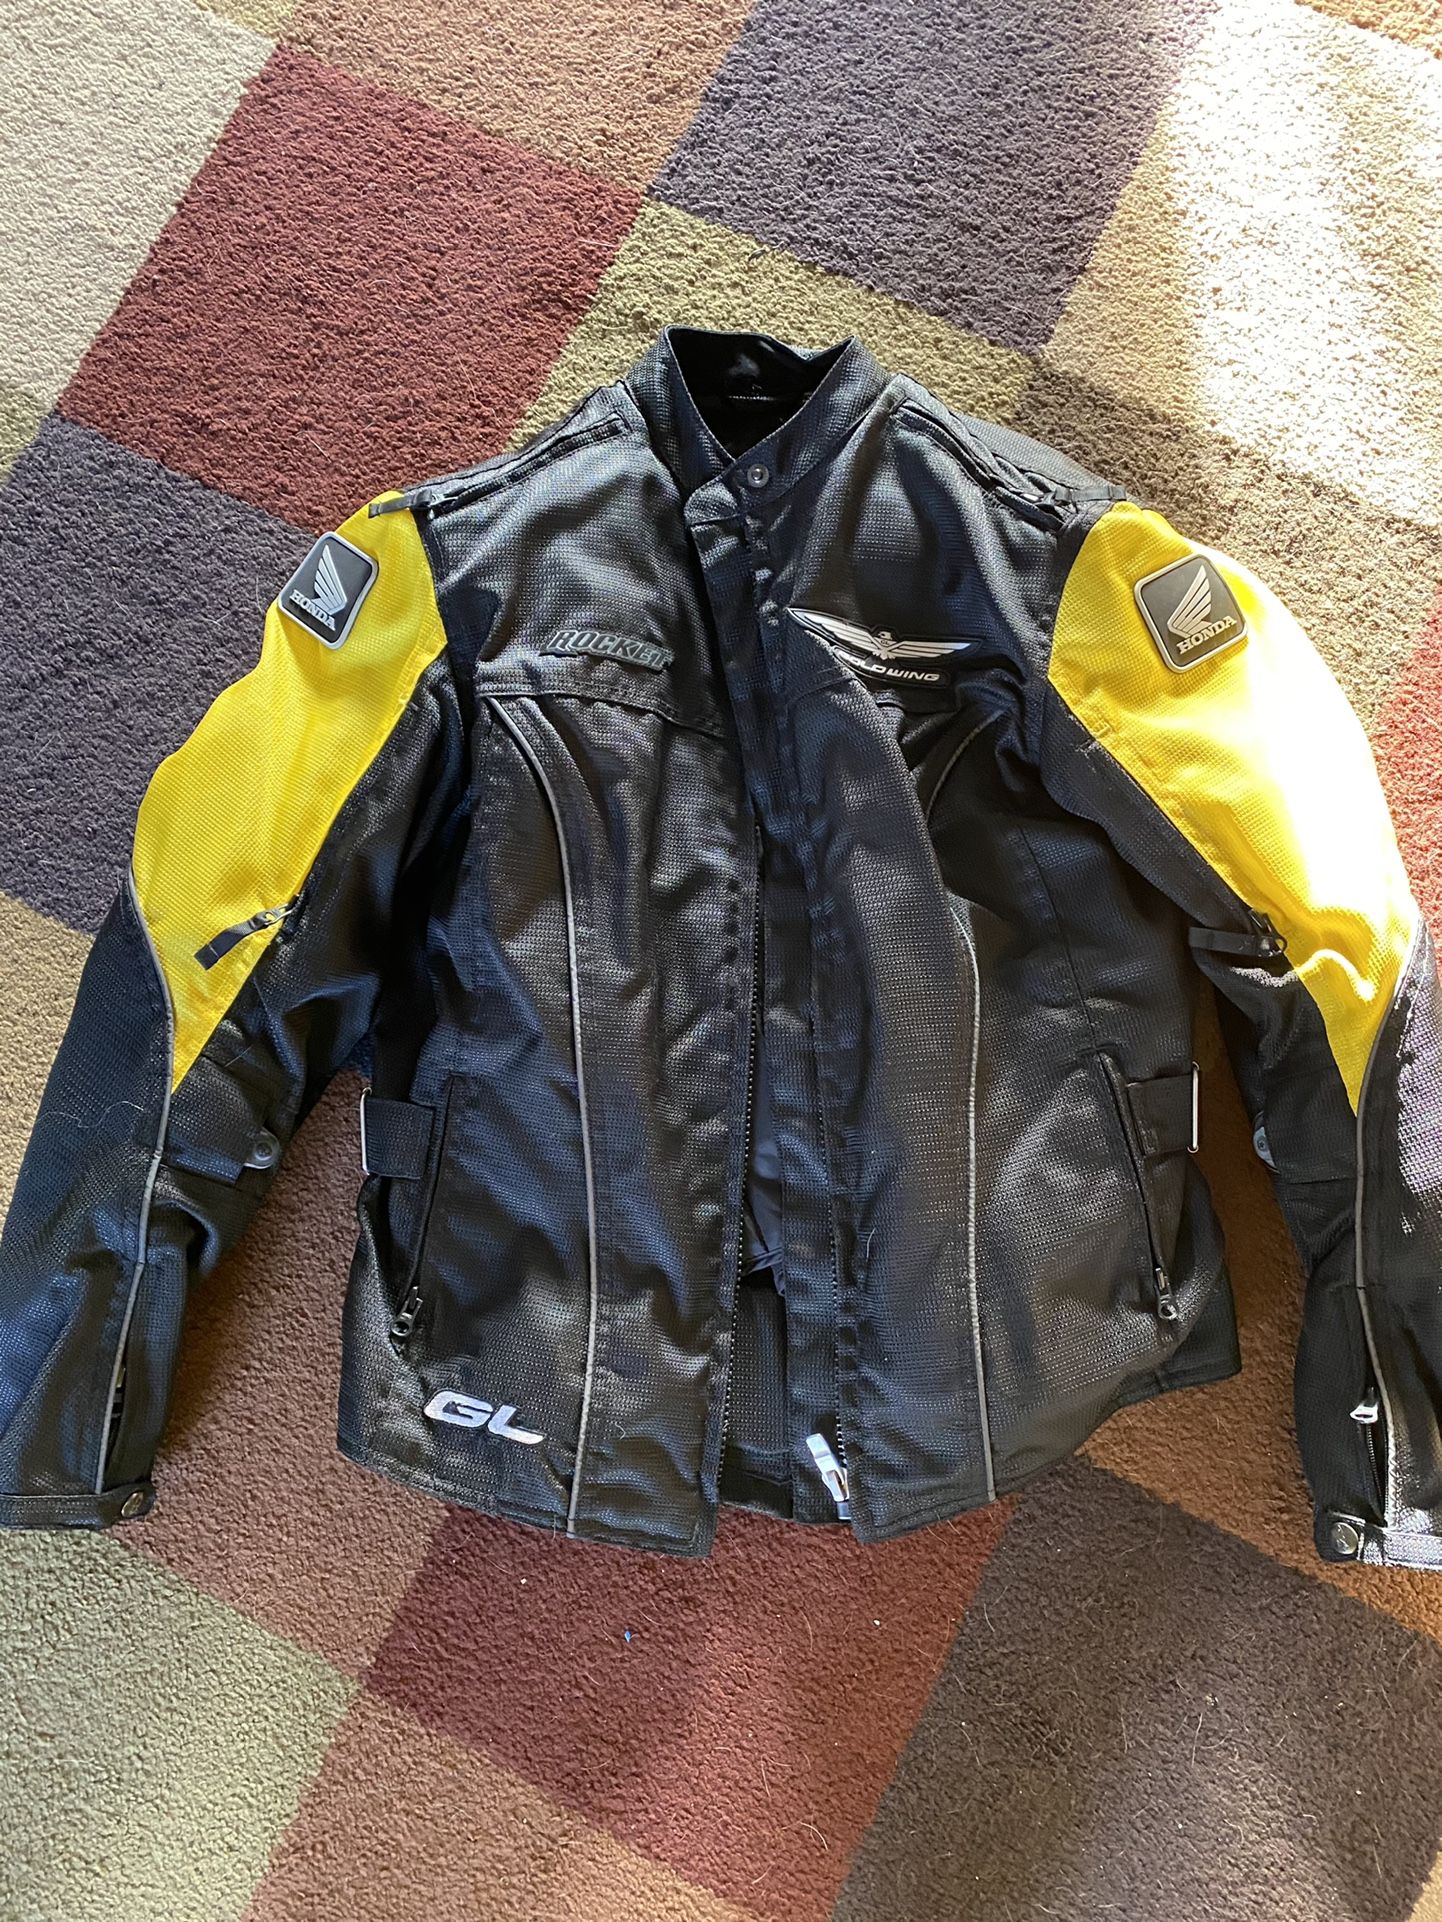 Women’s Med Joe Rocket Goldwing Motorcycle Jacket